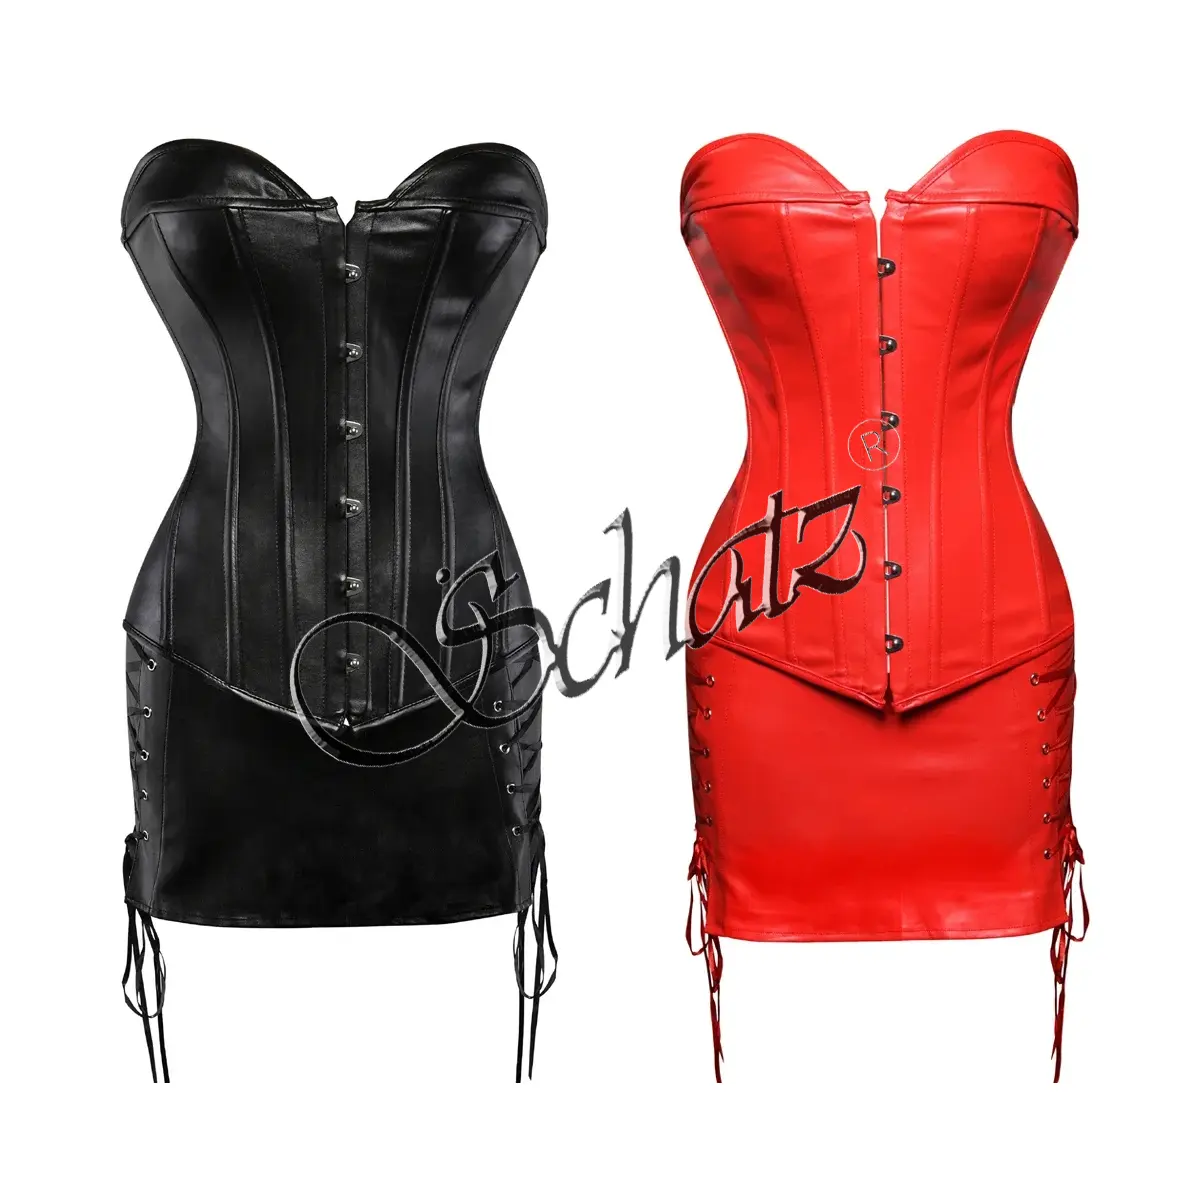 Korset kulit imitasi setelan rok Mini korset Gotik Steampunk untuk wanita hari Valentines Bustier Rockabilly pakaian ukuran Plus